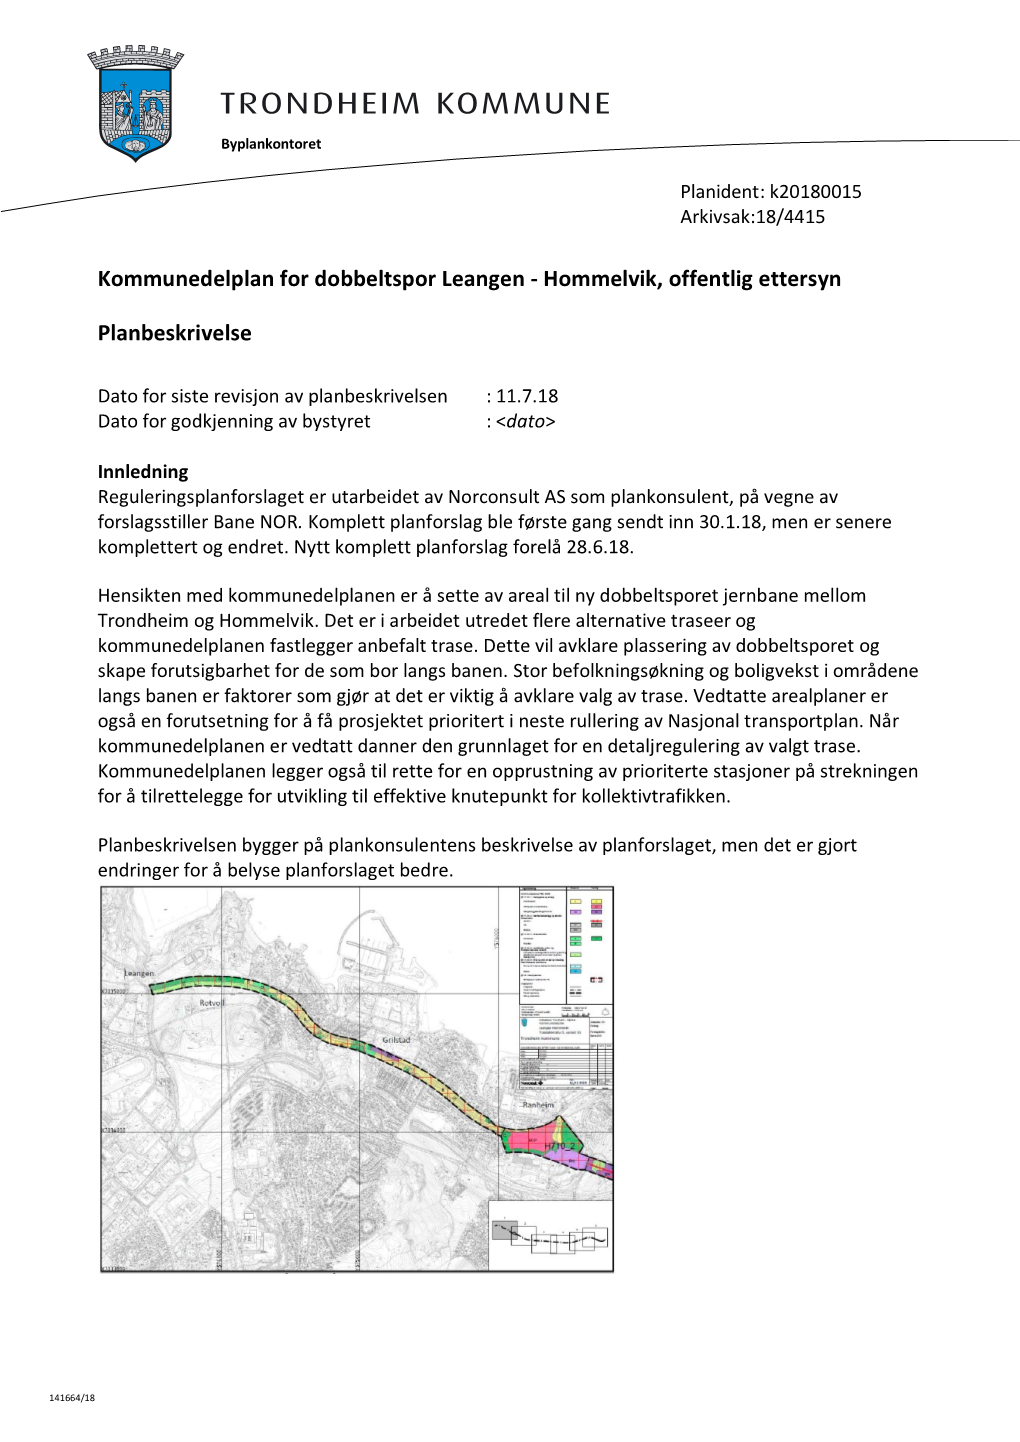 Kommunedelplan for Dobbeltspor Leangen - Hommelvik, Offentlig Ettersyn